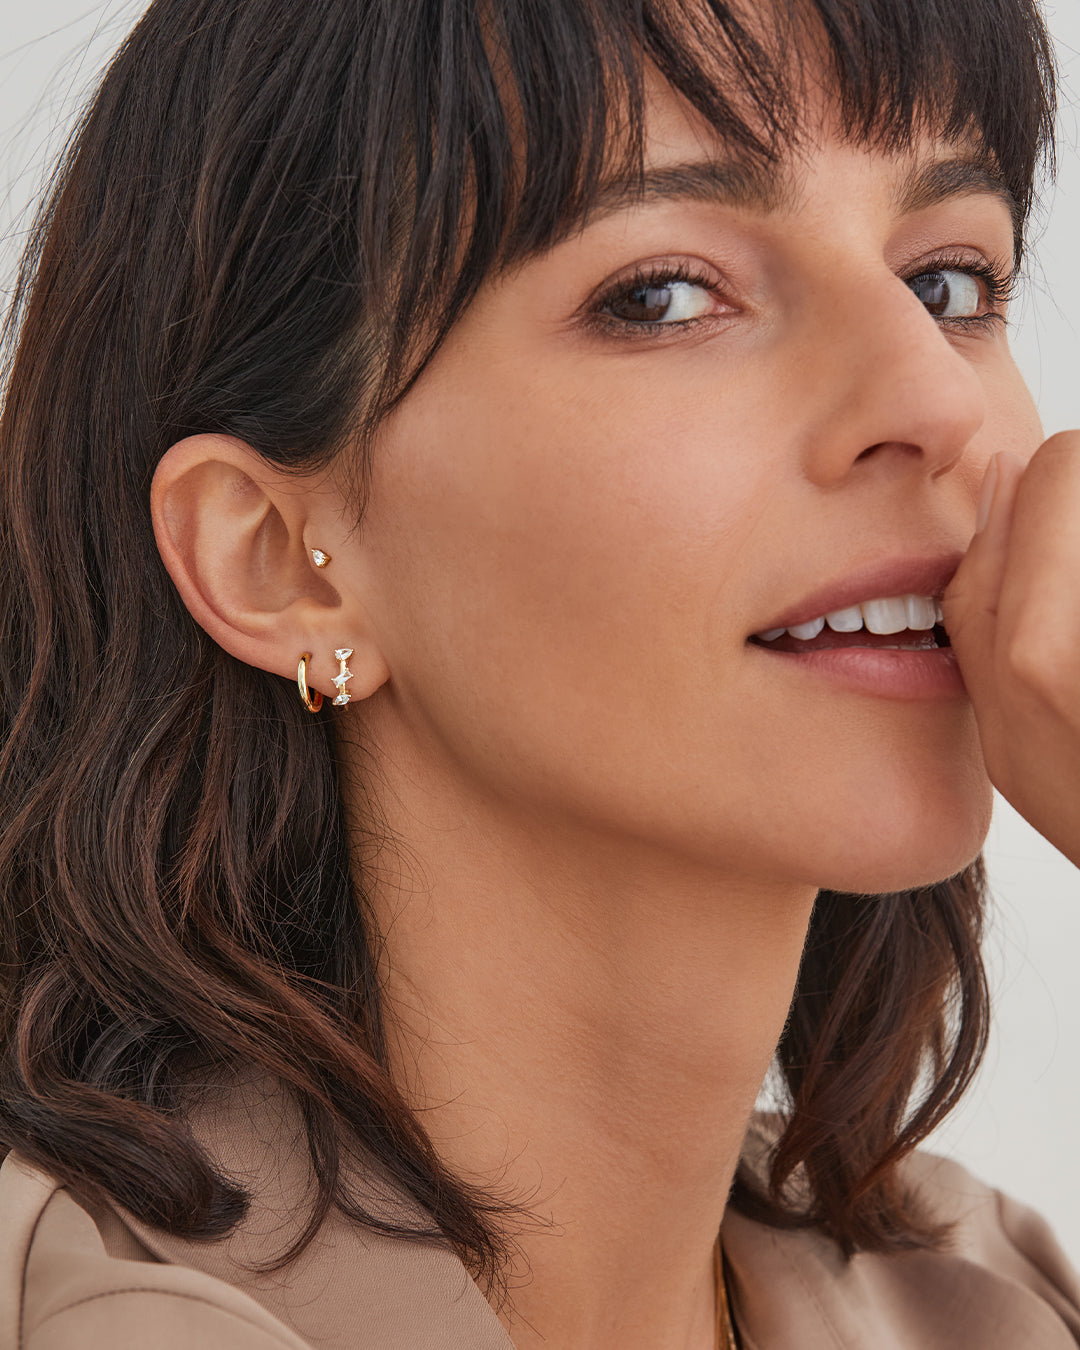 Pear Bezel Diamond Stud Earrings - Zoe Lev Jewelry